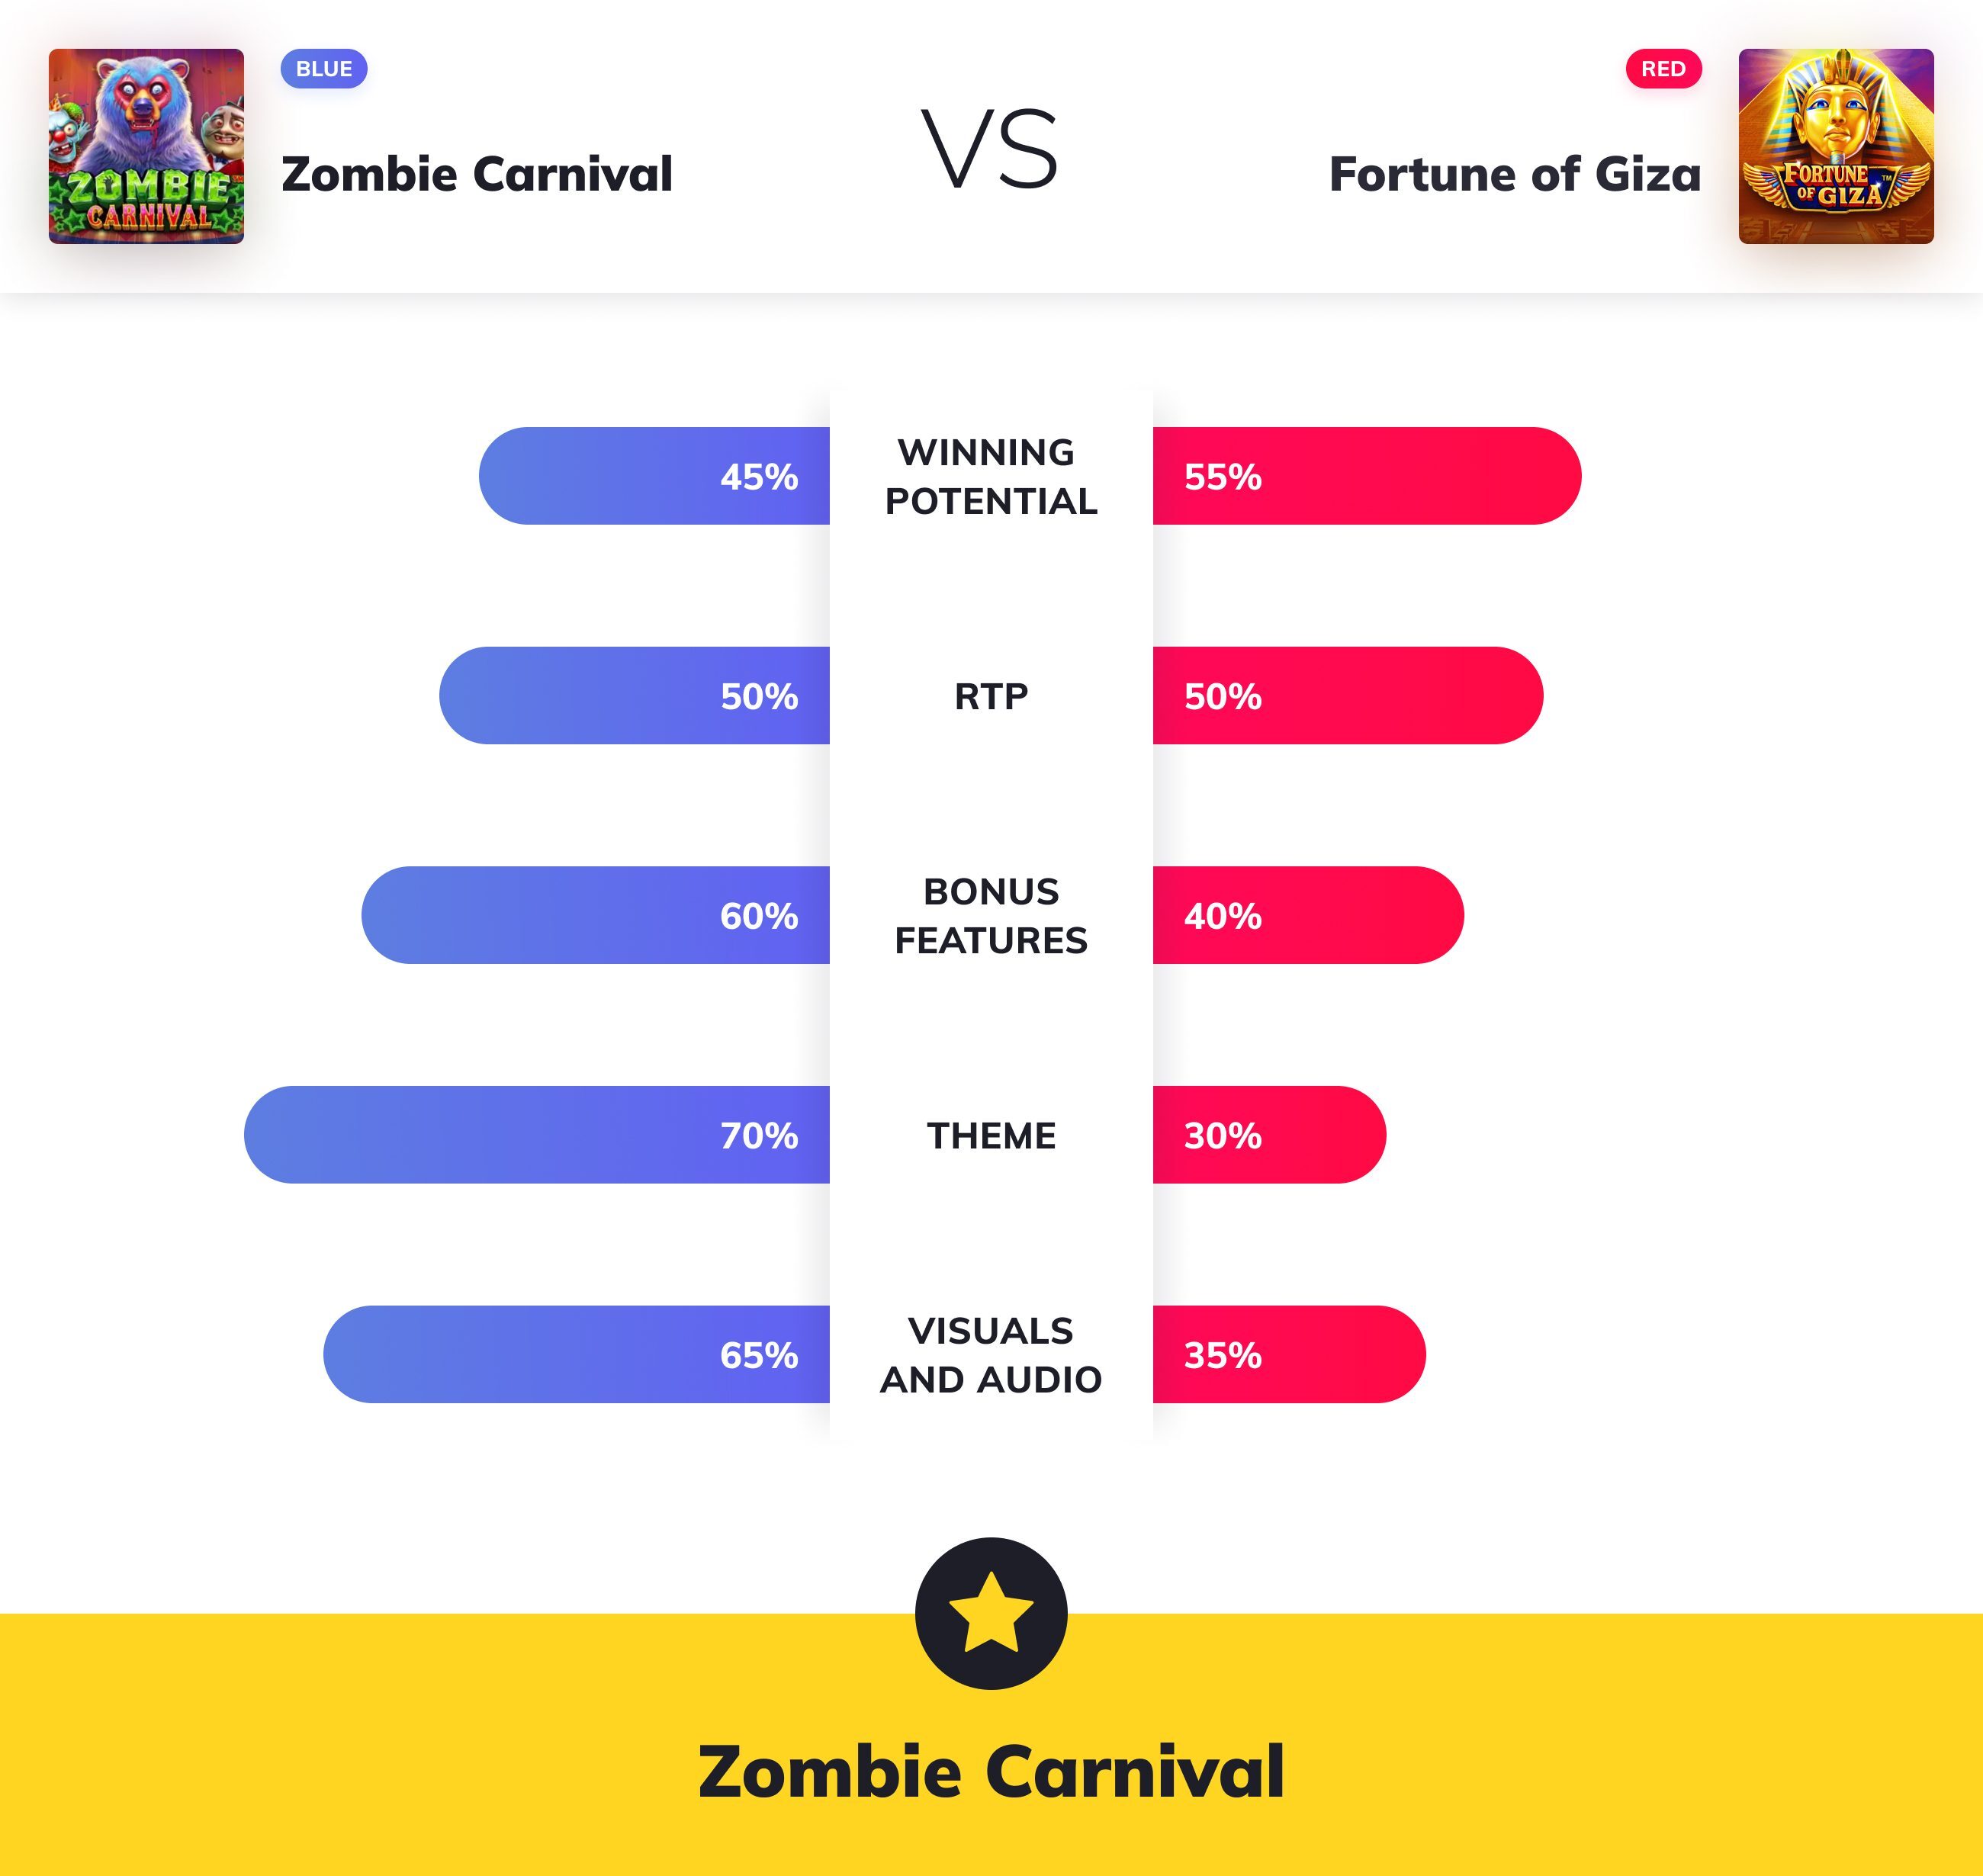 Slot Wars - Zombie Carnival VS Fortune Of Giza